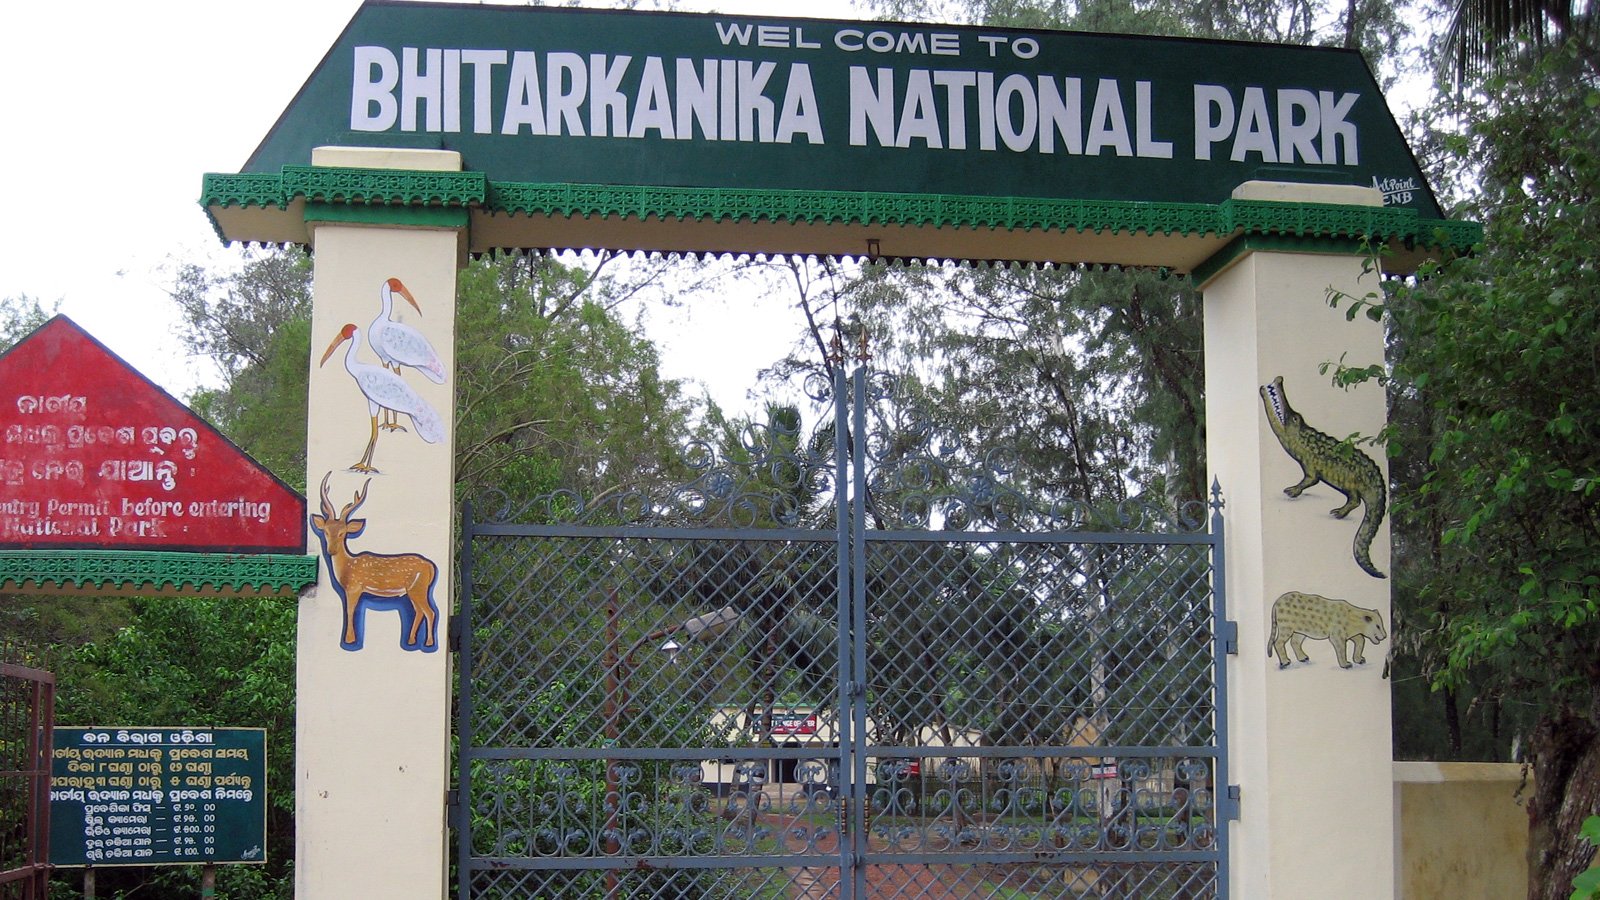 Bhitarkanika National Park